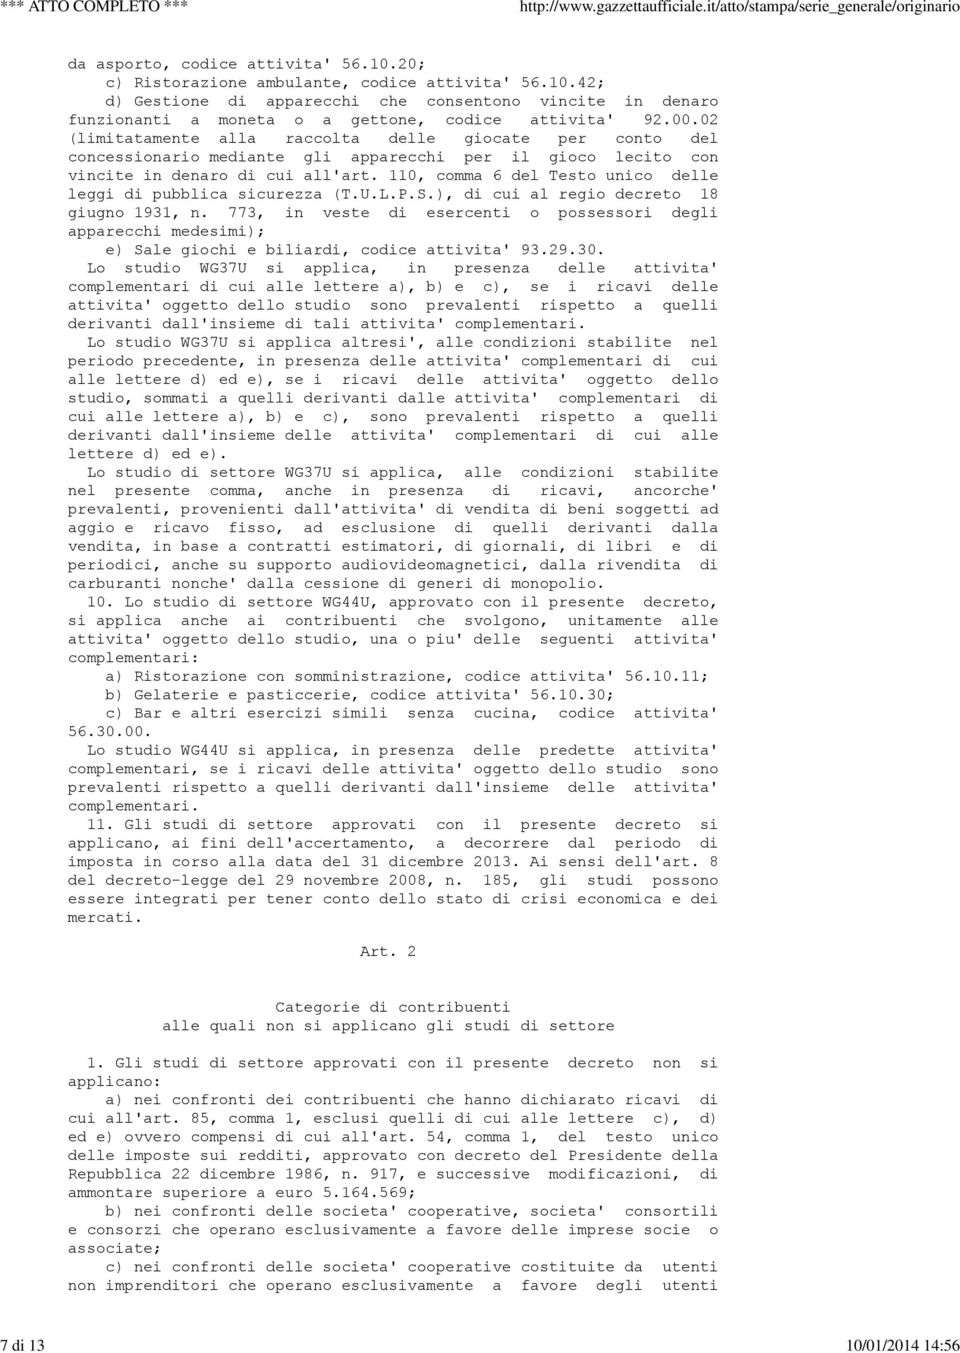 110, comma 6 del Testo unico delle leggi di pubblica sicurezza (T.U.L.P.S.), di cui al regio decreto 18 giugno 1931, n.